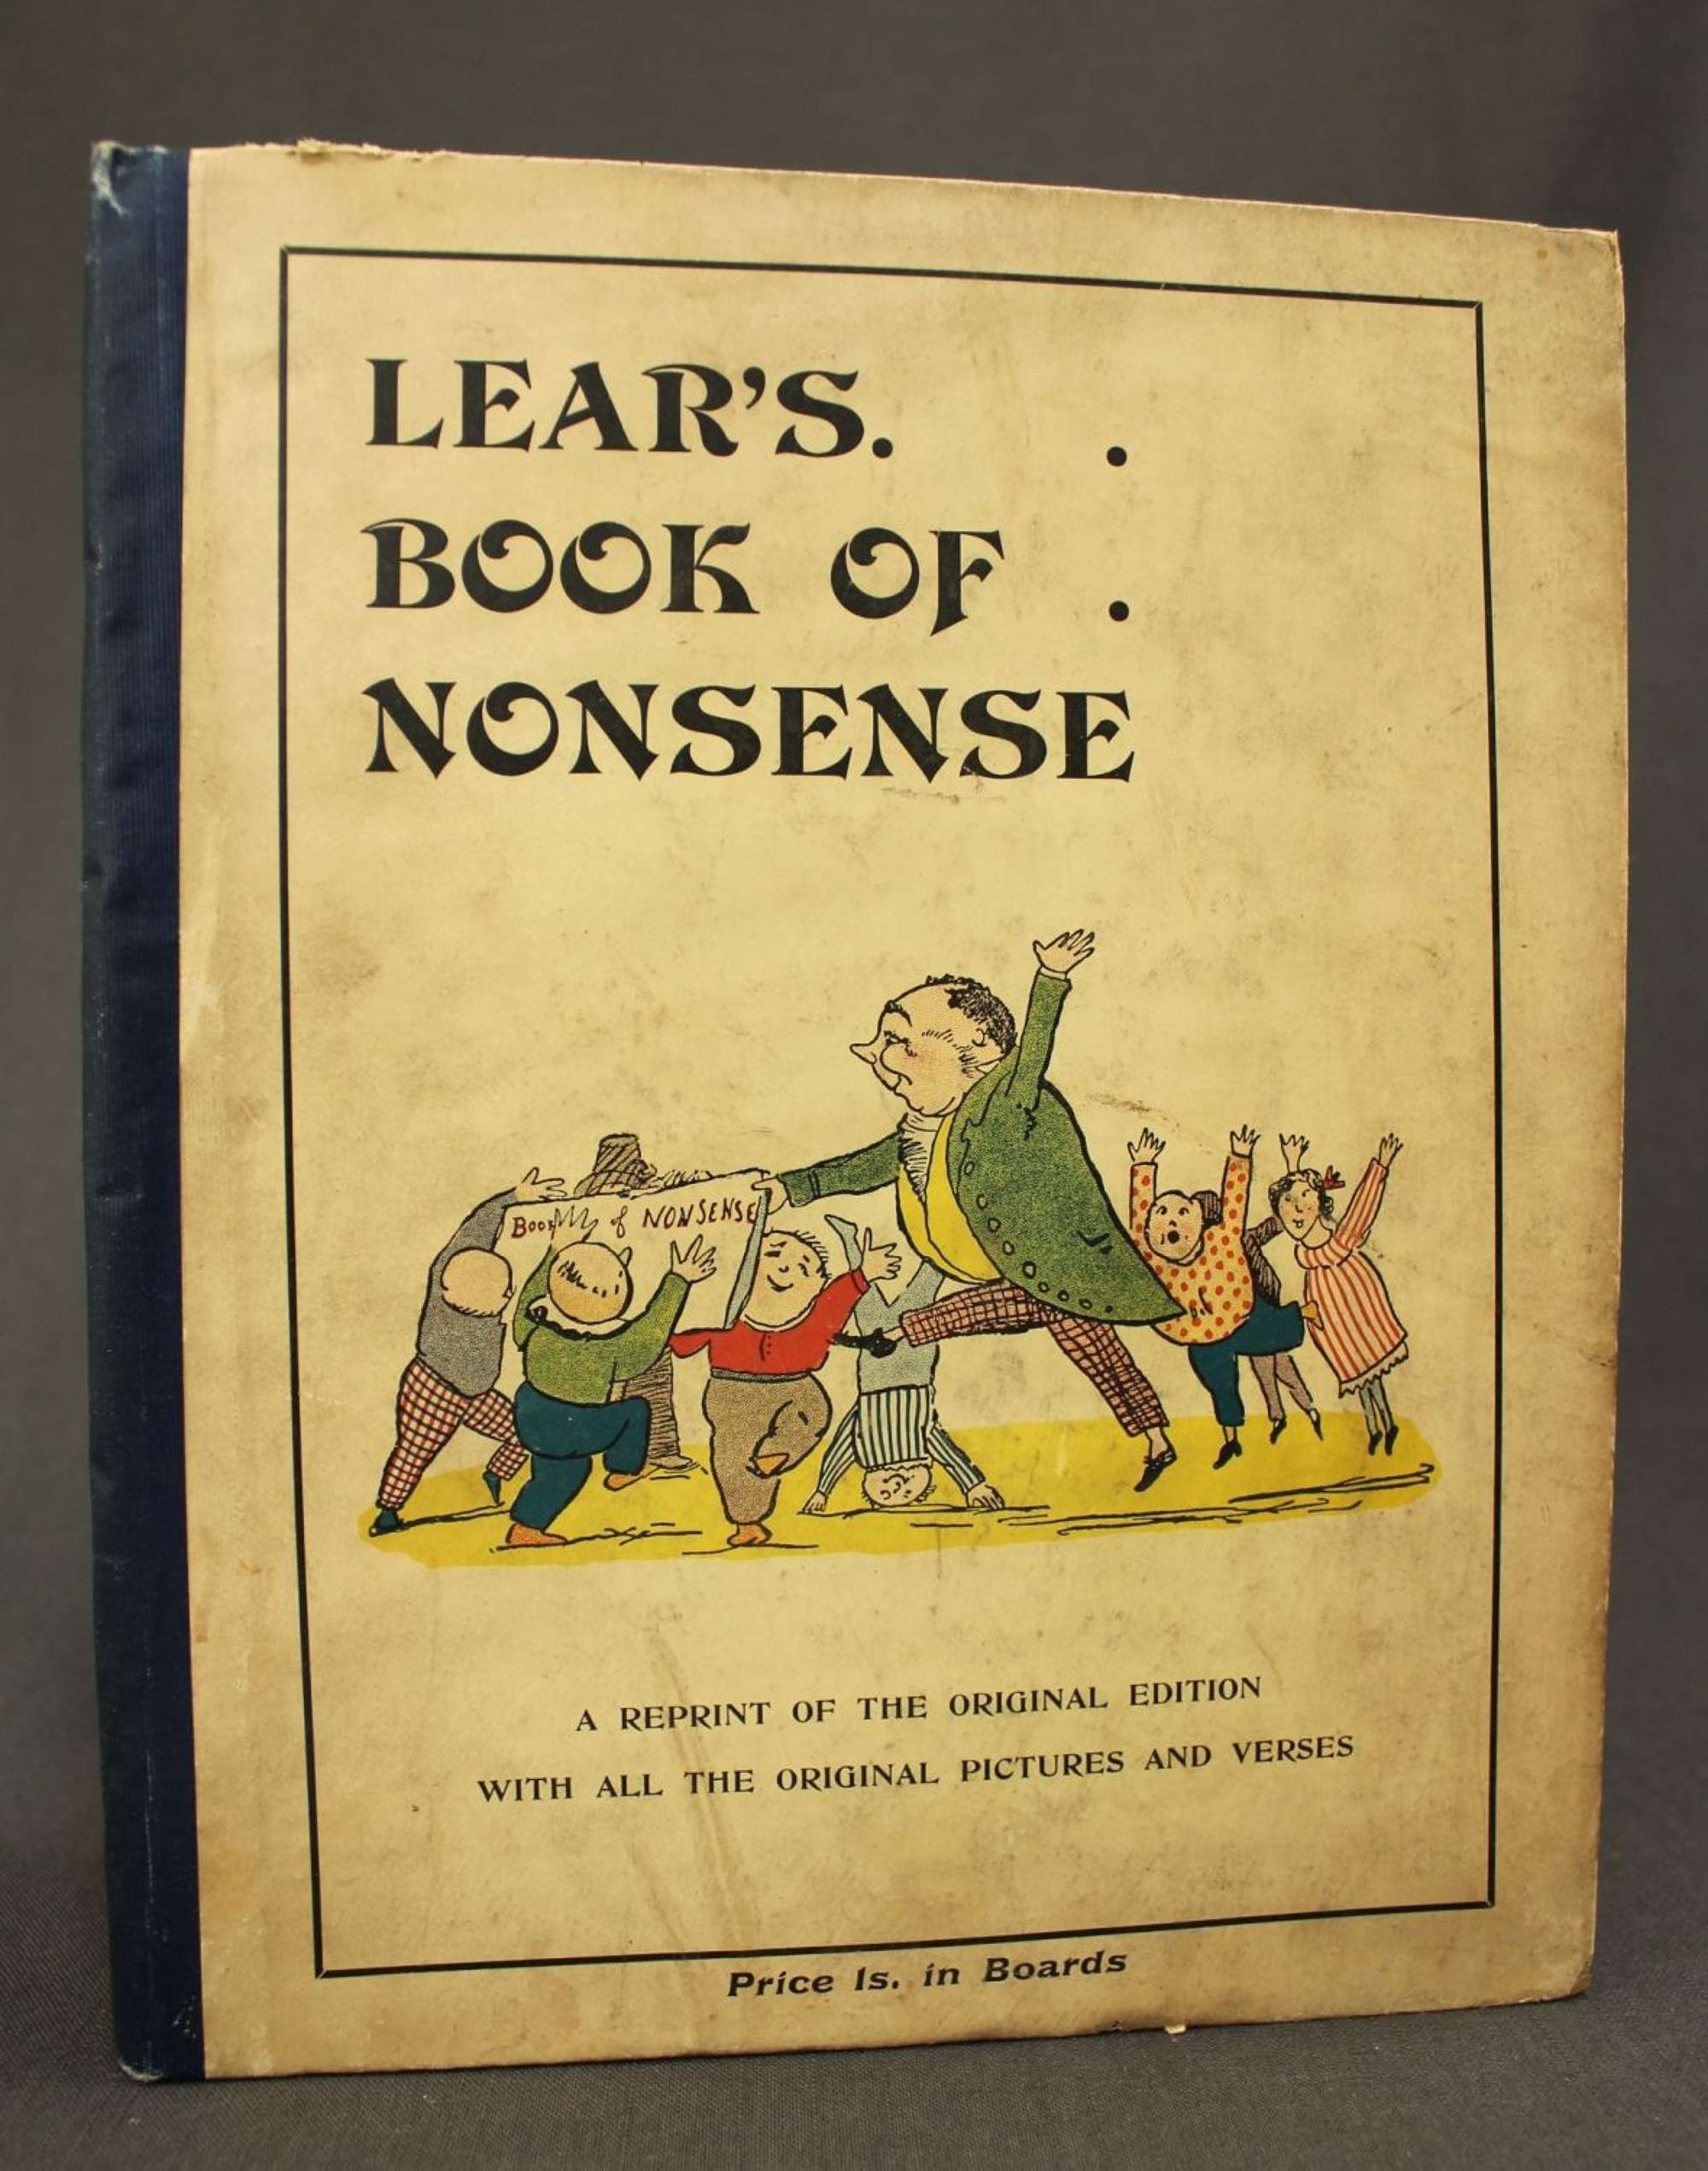 Lear@APOS@s Book of Nonsense